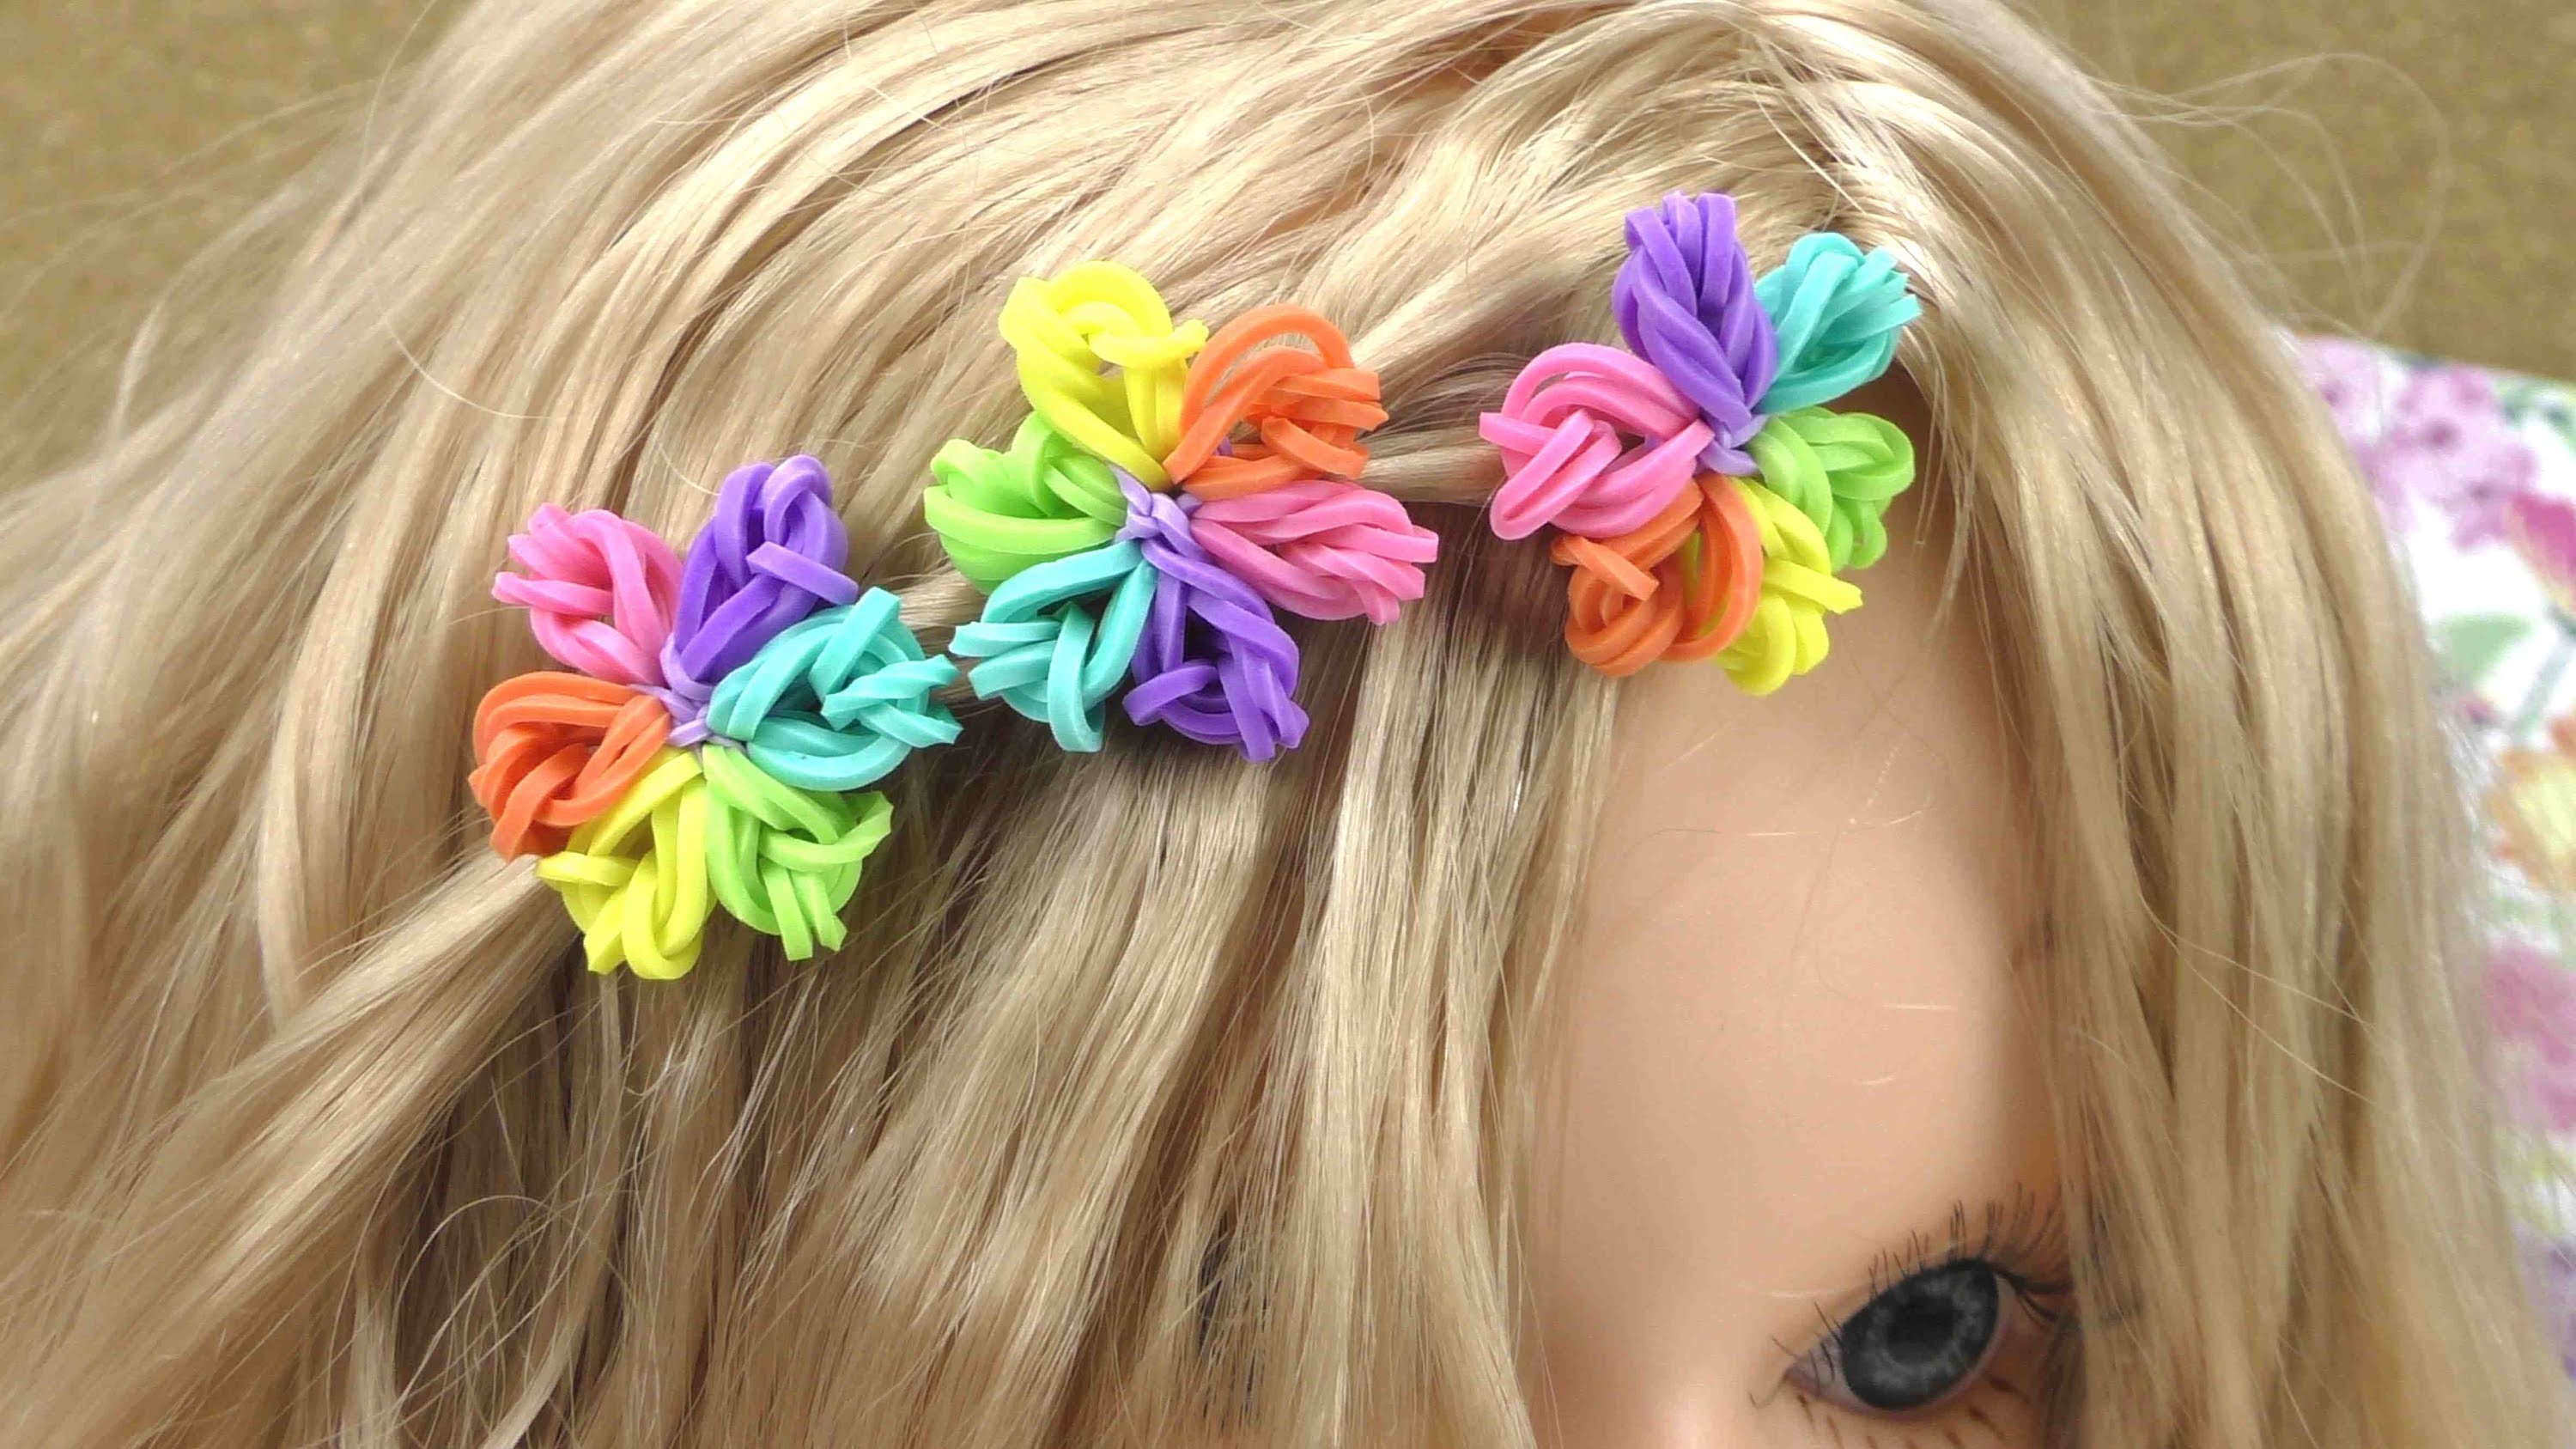 Hairloom Regenbogen Blumen Tutorial - Wie mache ich Rainbow Loom Blumen fürs Haar?